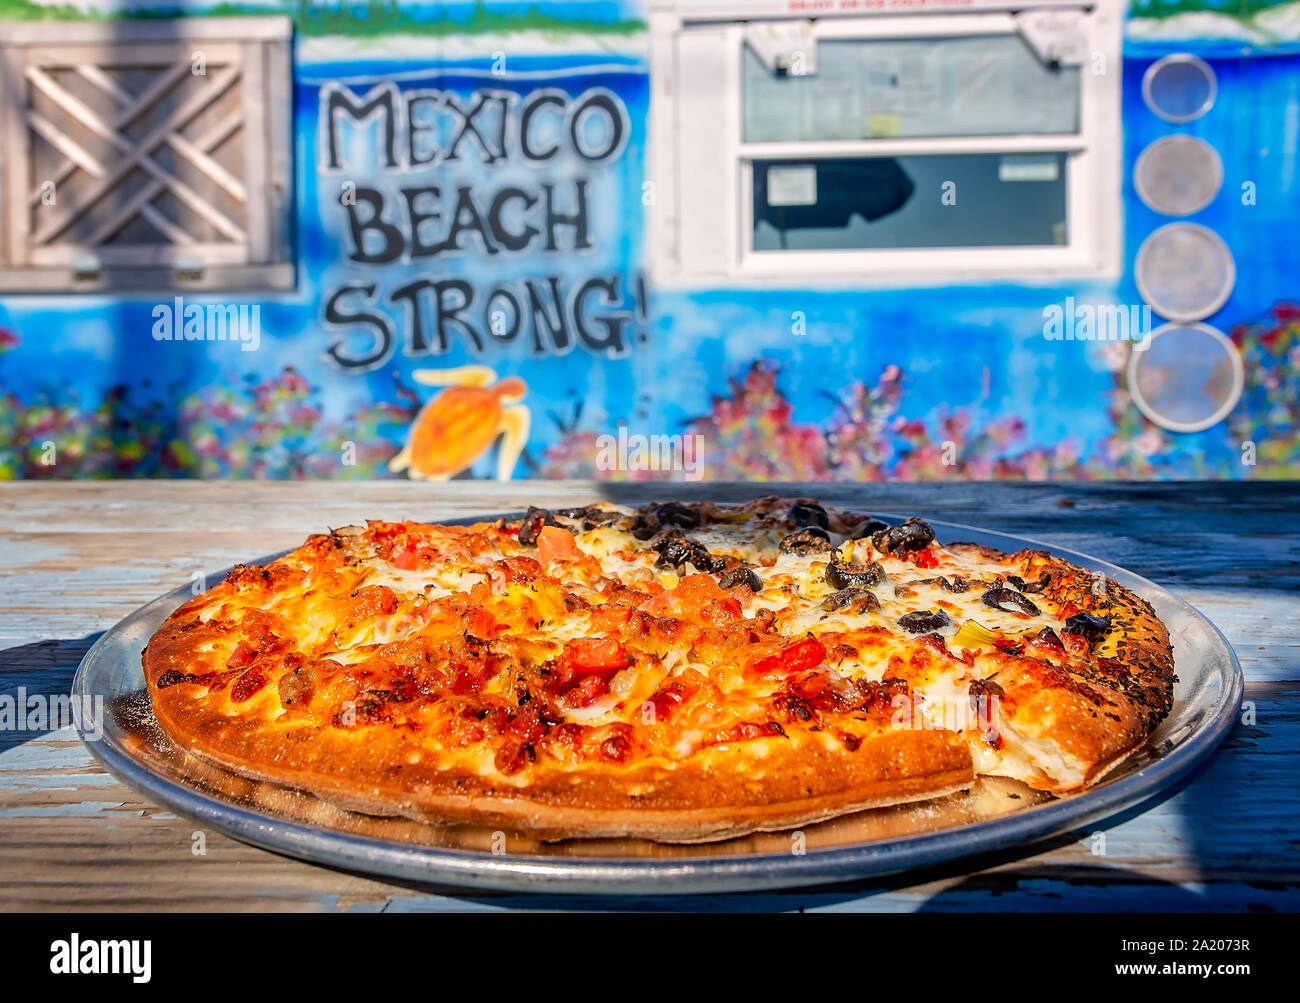 La pizza si siede su un tavolo da picnic nella parte anteriore di una "Messico Beach Strong" murale a Crazy Beach Pizza, Sett. 24, 2019, in Messico Beach, Florida. Foto Stock